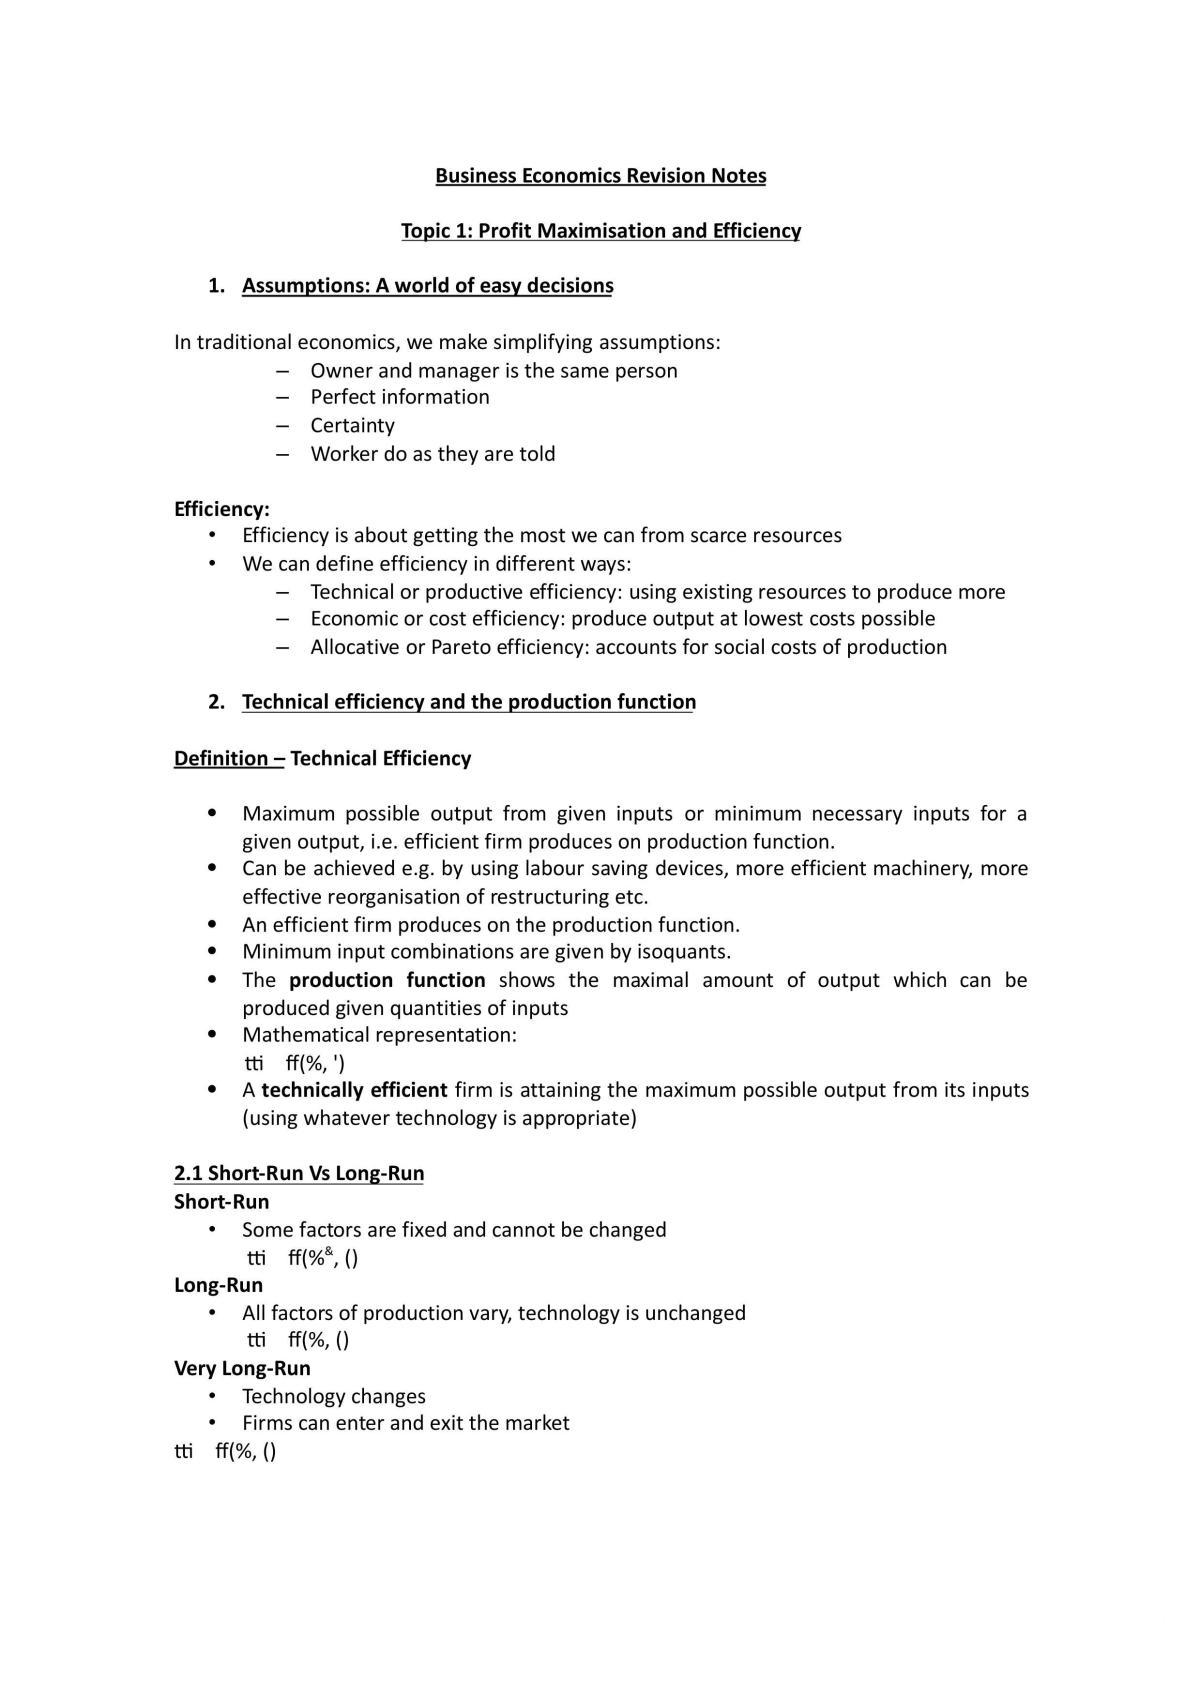 Business Economics Revision Notes - Page 1